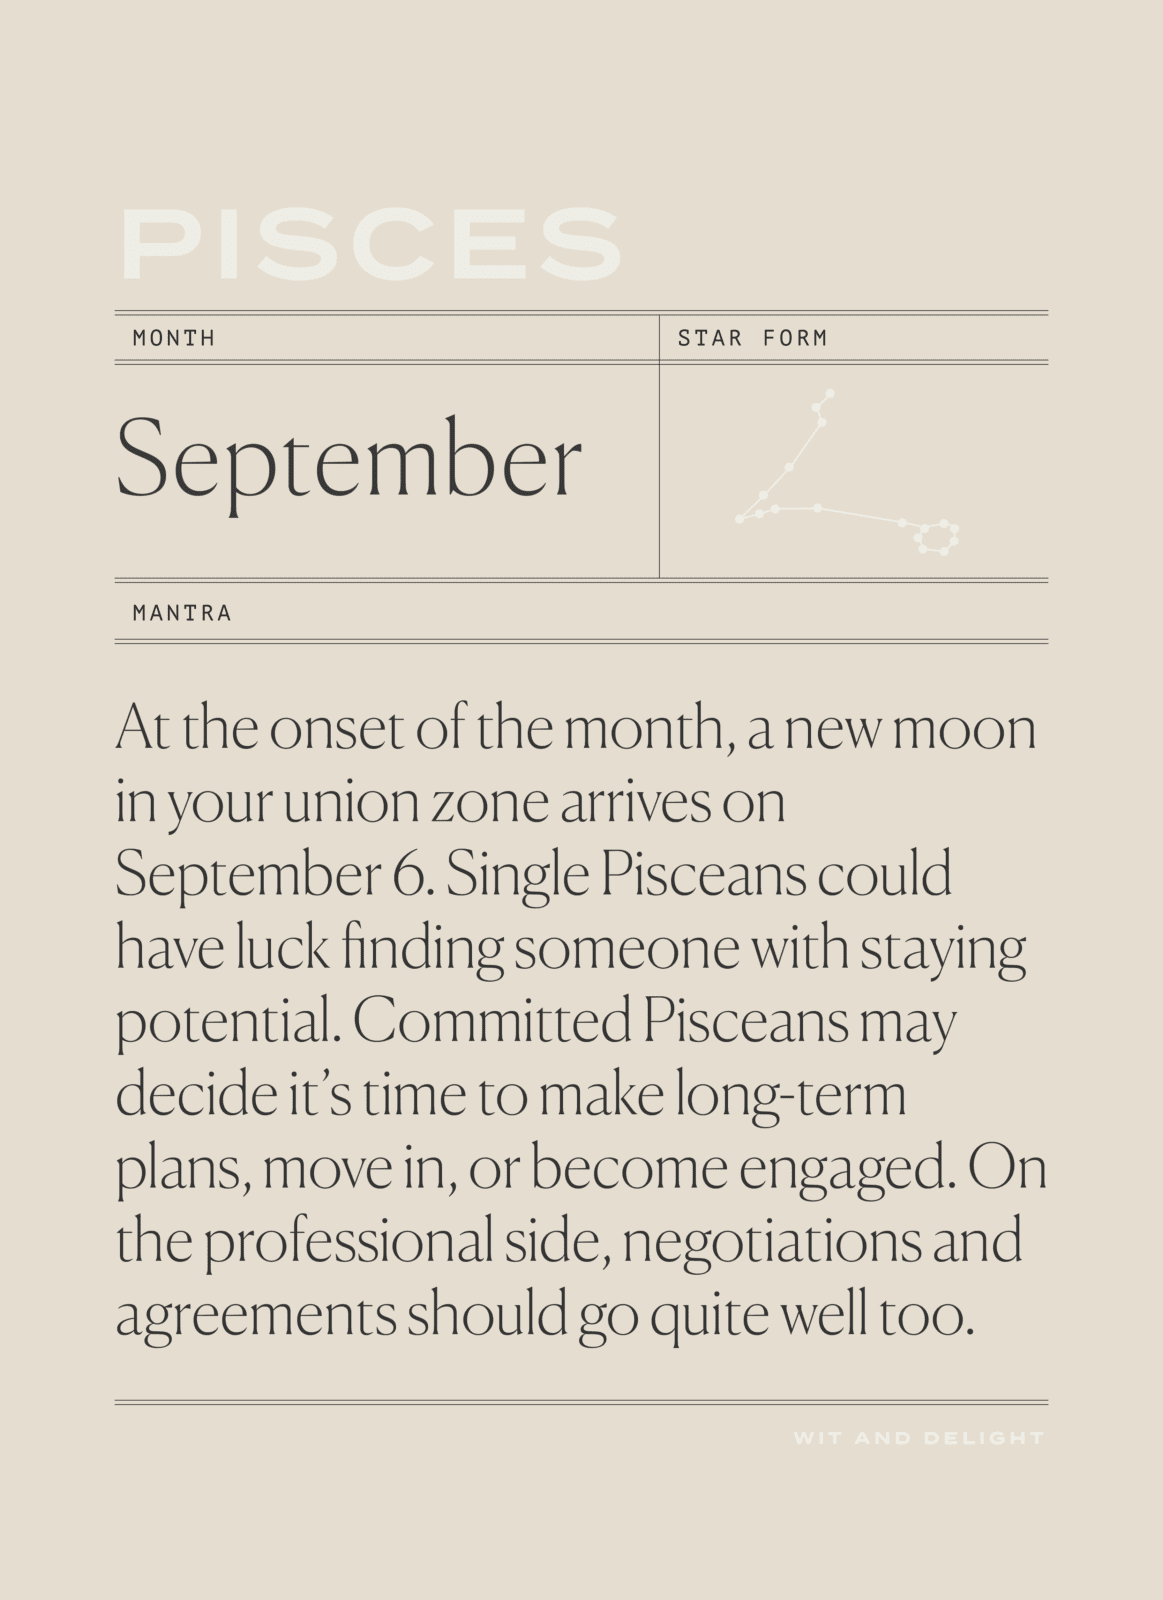 September 2021 Horoscopes: Focus on the Details | Wit & Delight